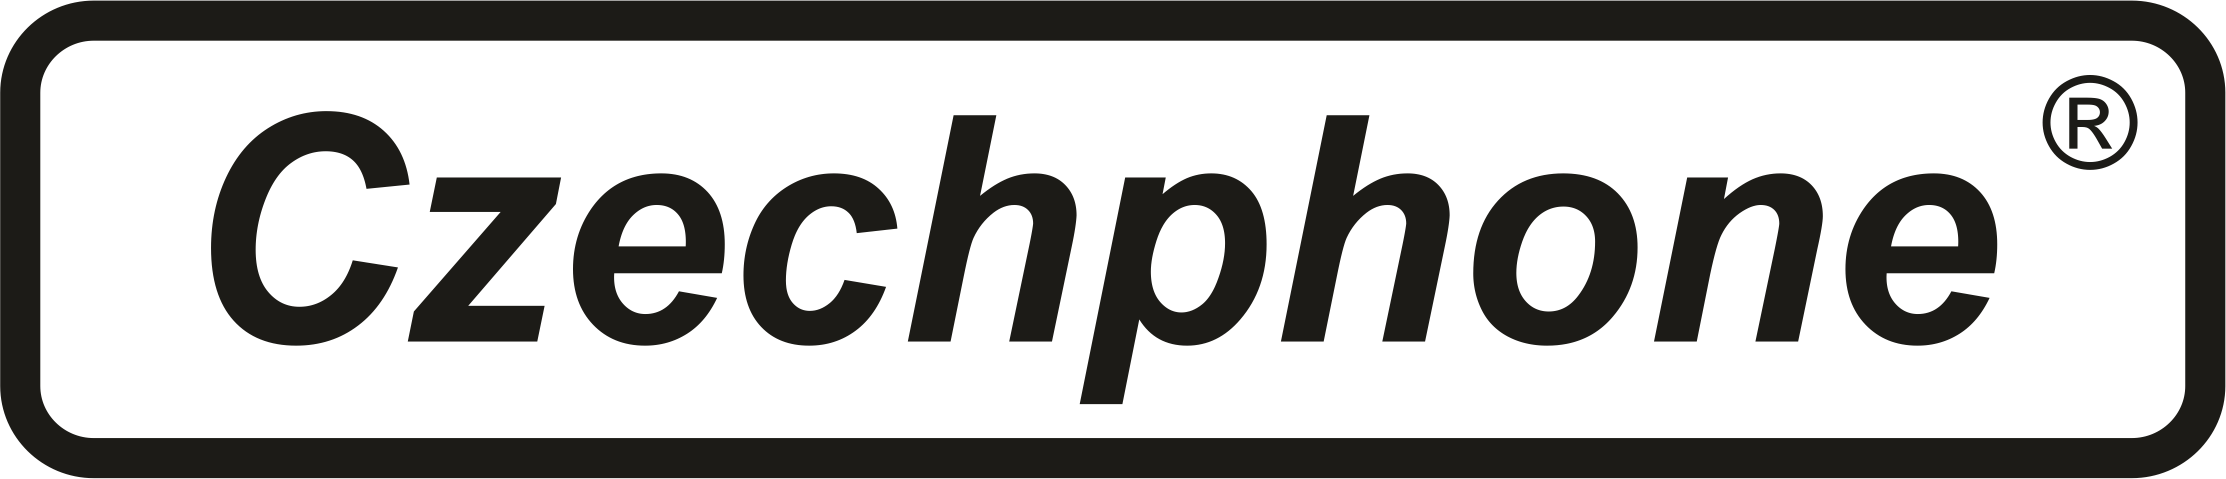 logo-czechphone--cerne--obrysy